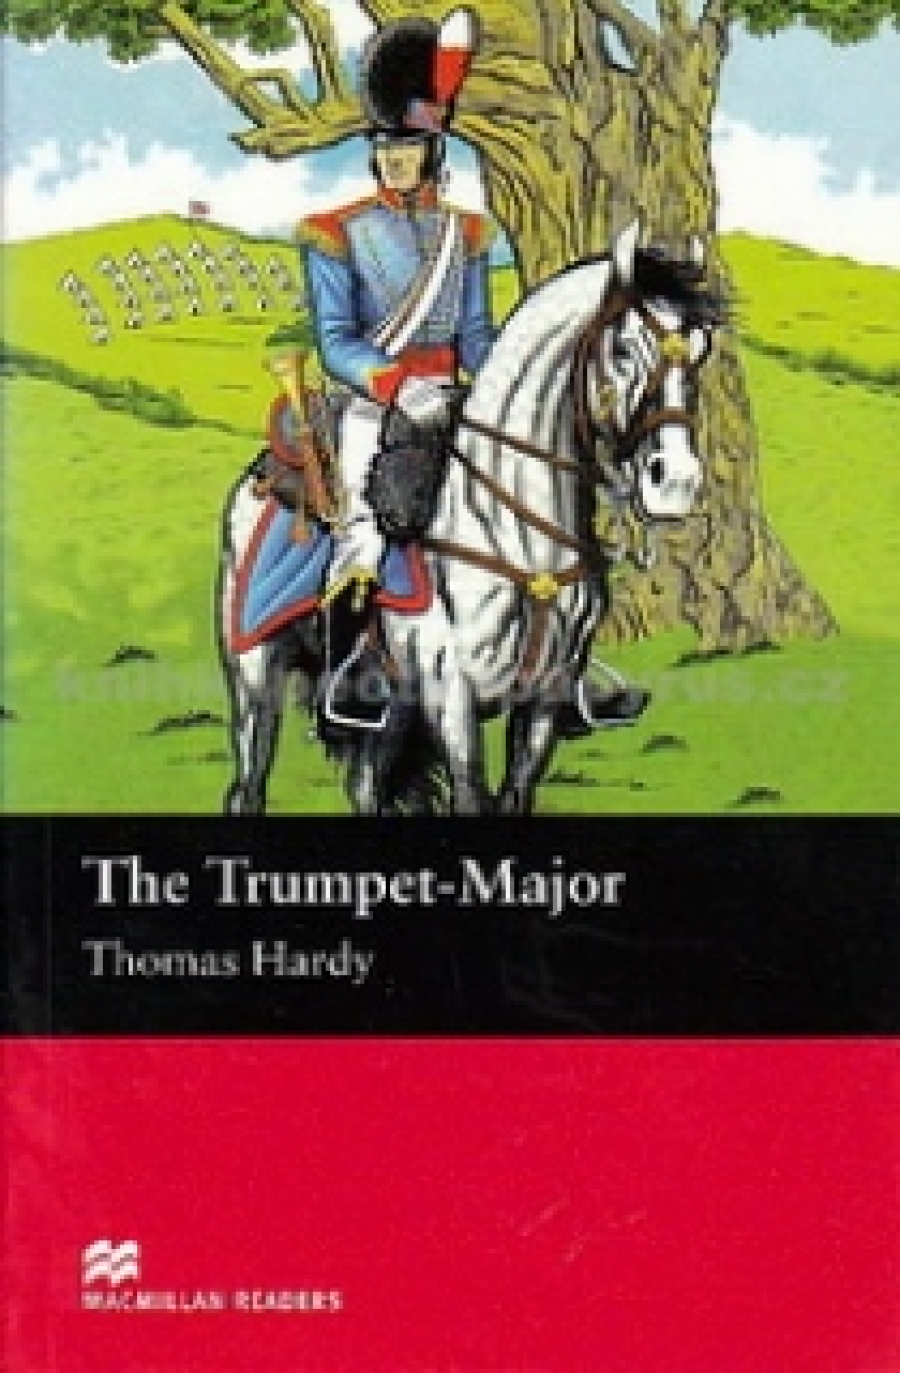 Thomas Hardy, retold by John Escott The Trumpet Major 